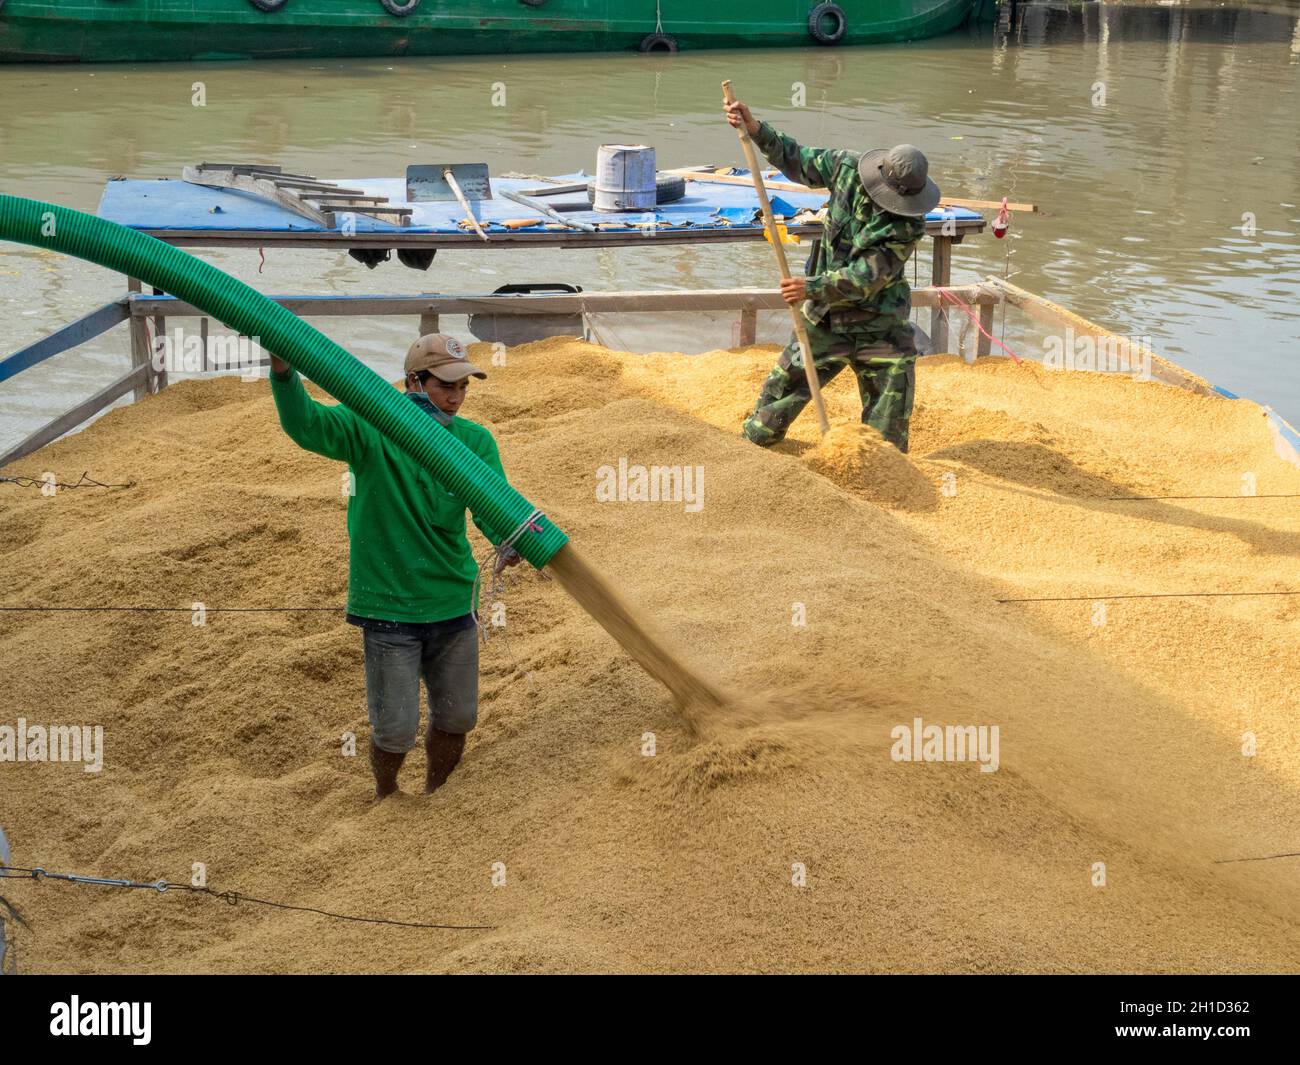 Zwei Arbeiter laden Reis auf einen BPAT im Mekong-Flussdelta - Phong Dien, Vietnam Stockfoto